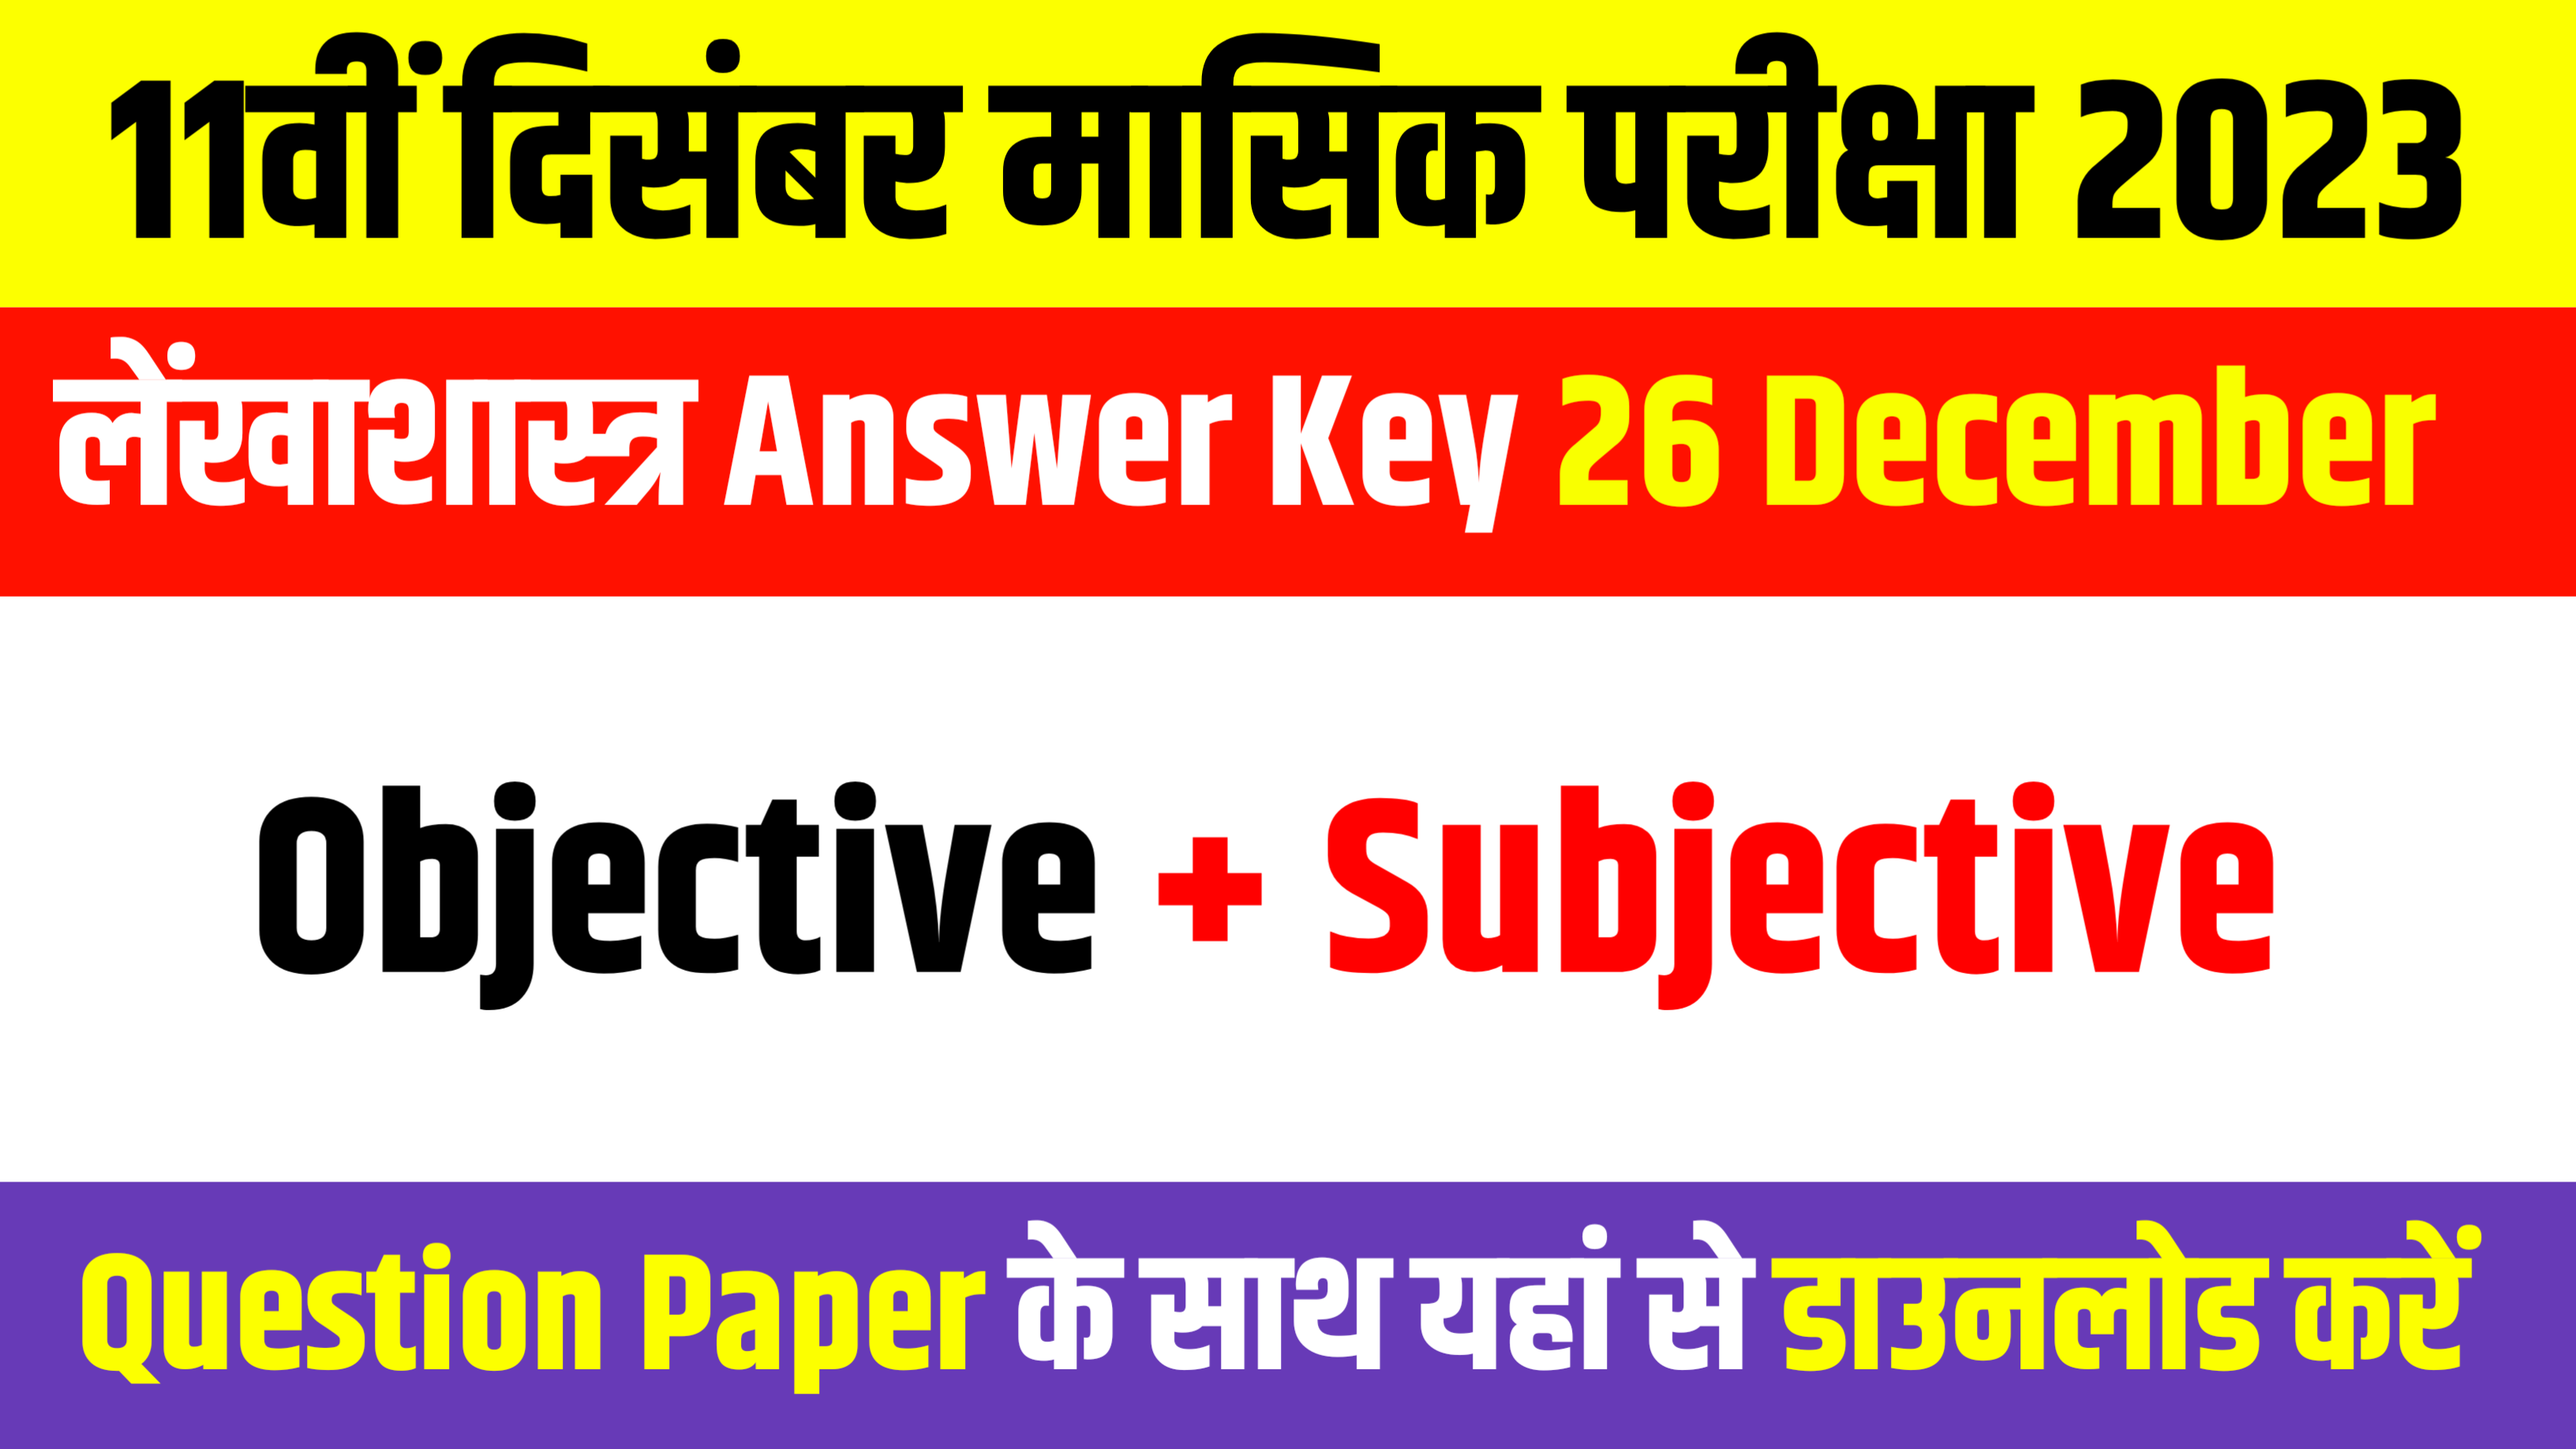 Bihar Board 11th Accountancy Answer Key: